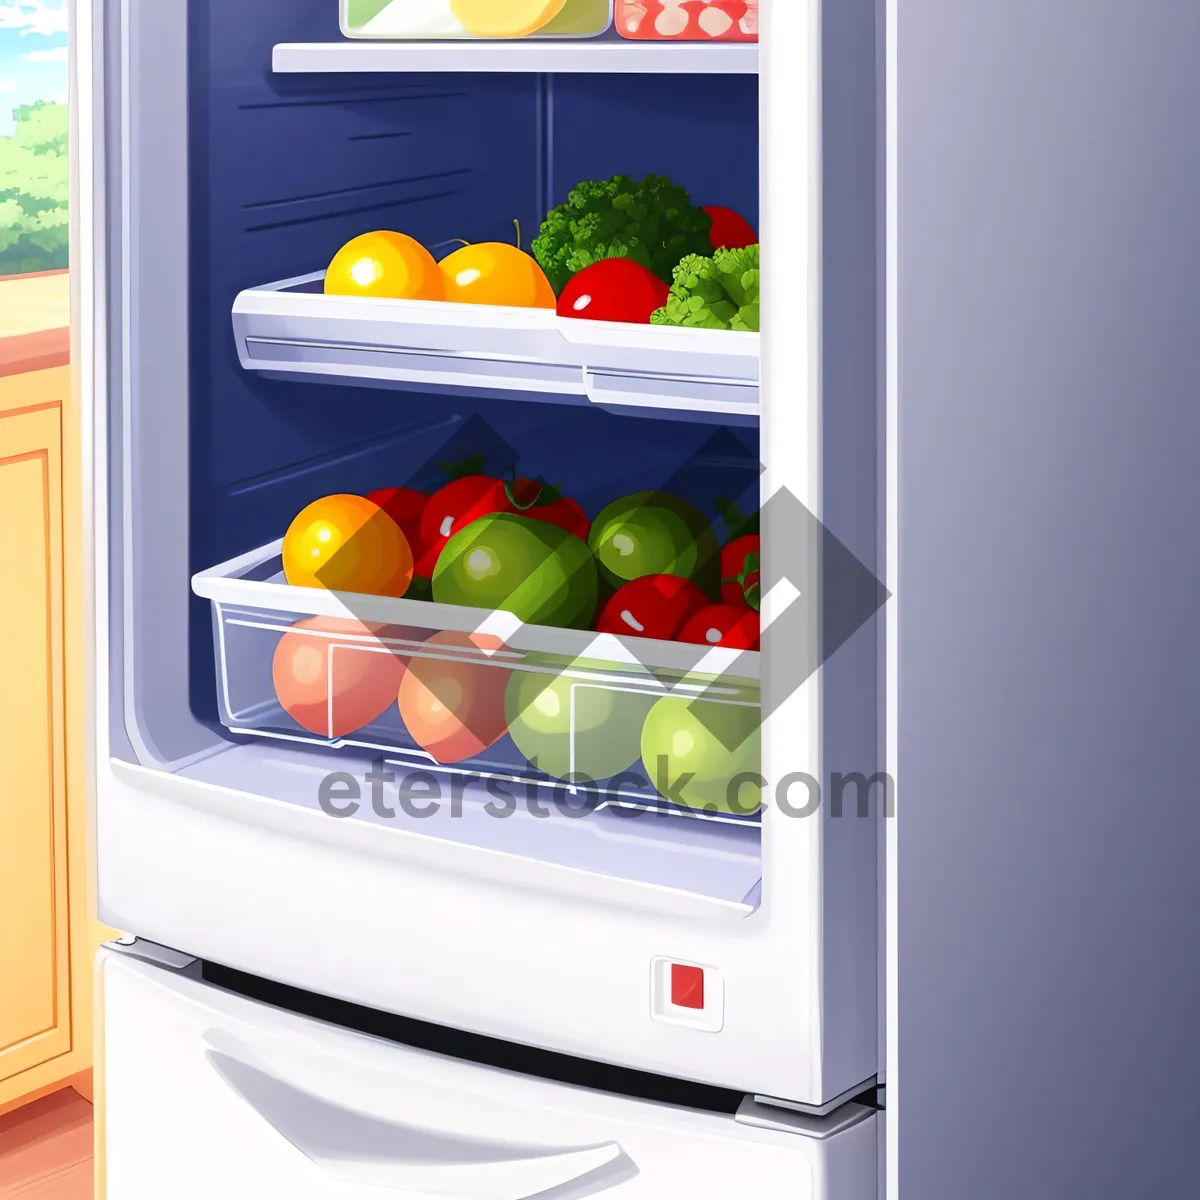 Picture of Modern Kitchen Refrigerator: Fresh Food Storage Solution